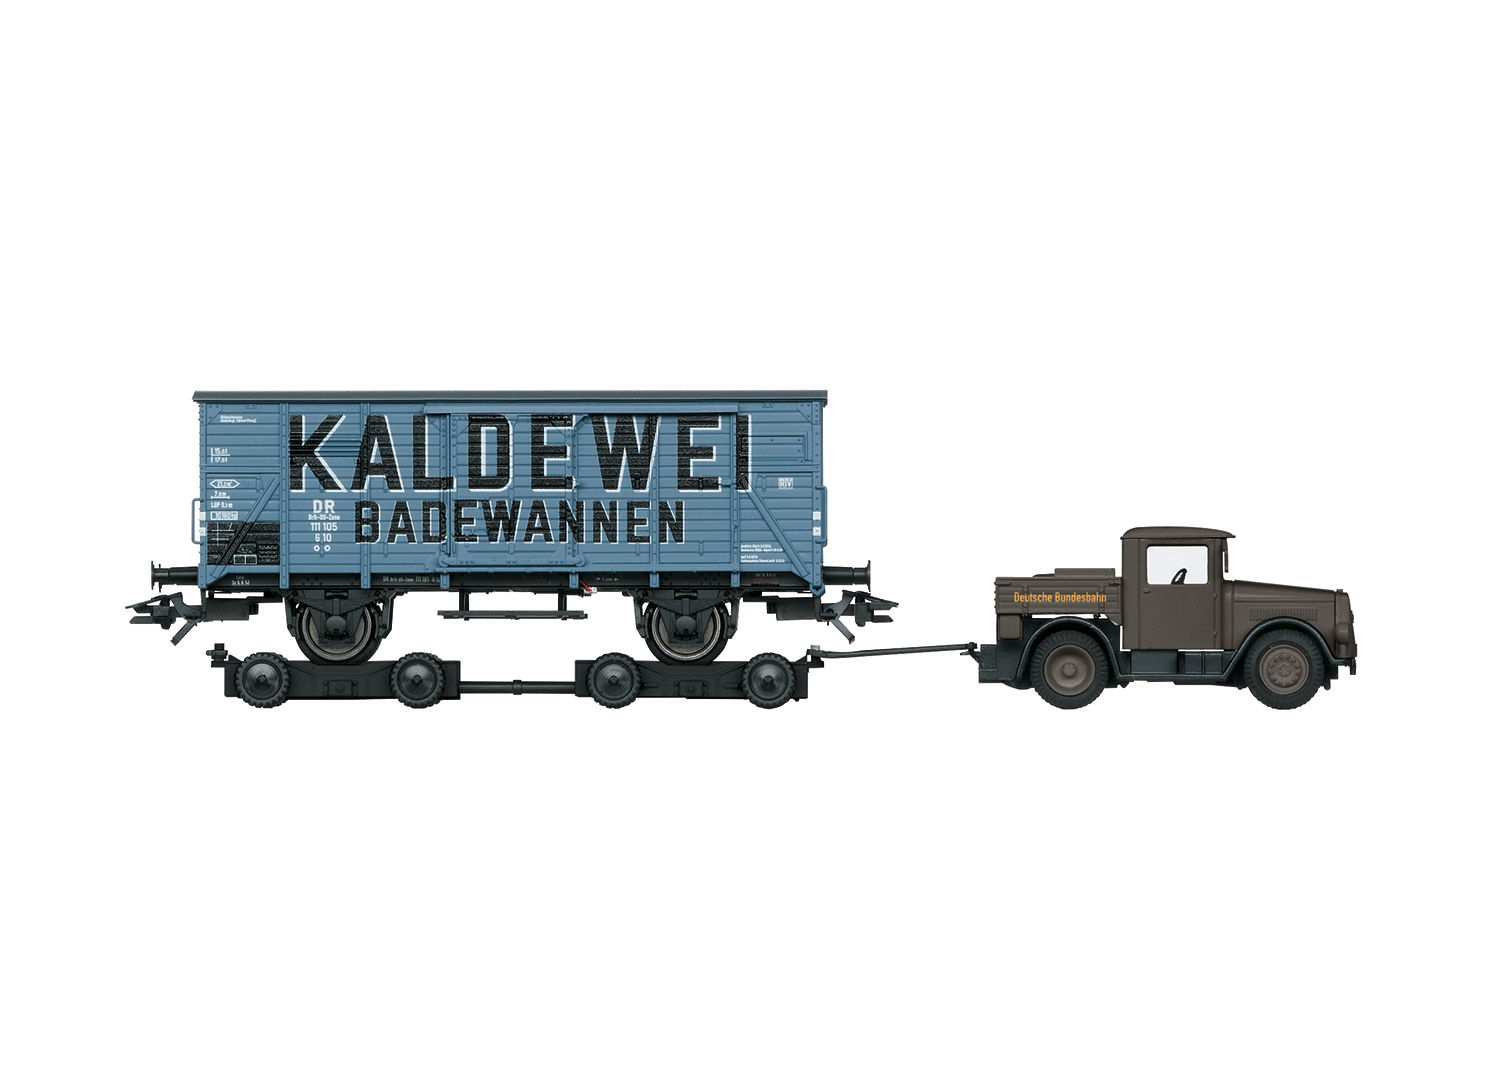 Märklin 48822 Gedeckter Güterwagen G 10 "Kaldewei" mit Strassenroller#NEU in OVP